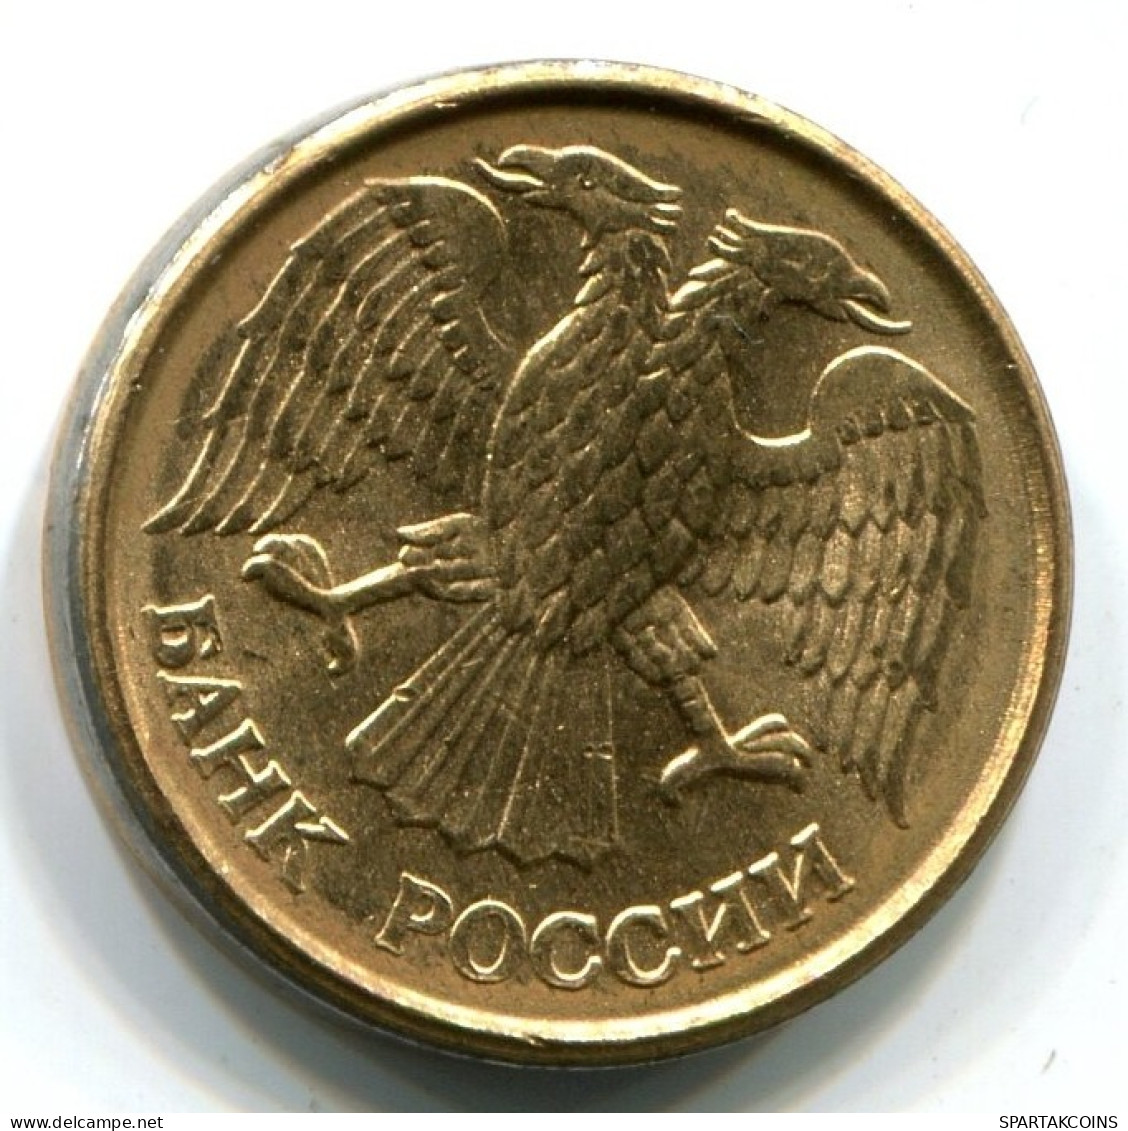 1 RUBLE 1992 RUSSIA UNC Coin #W11442.U.A - Russia